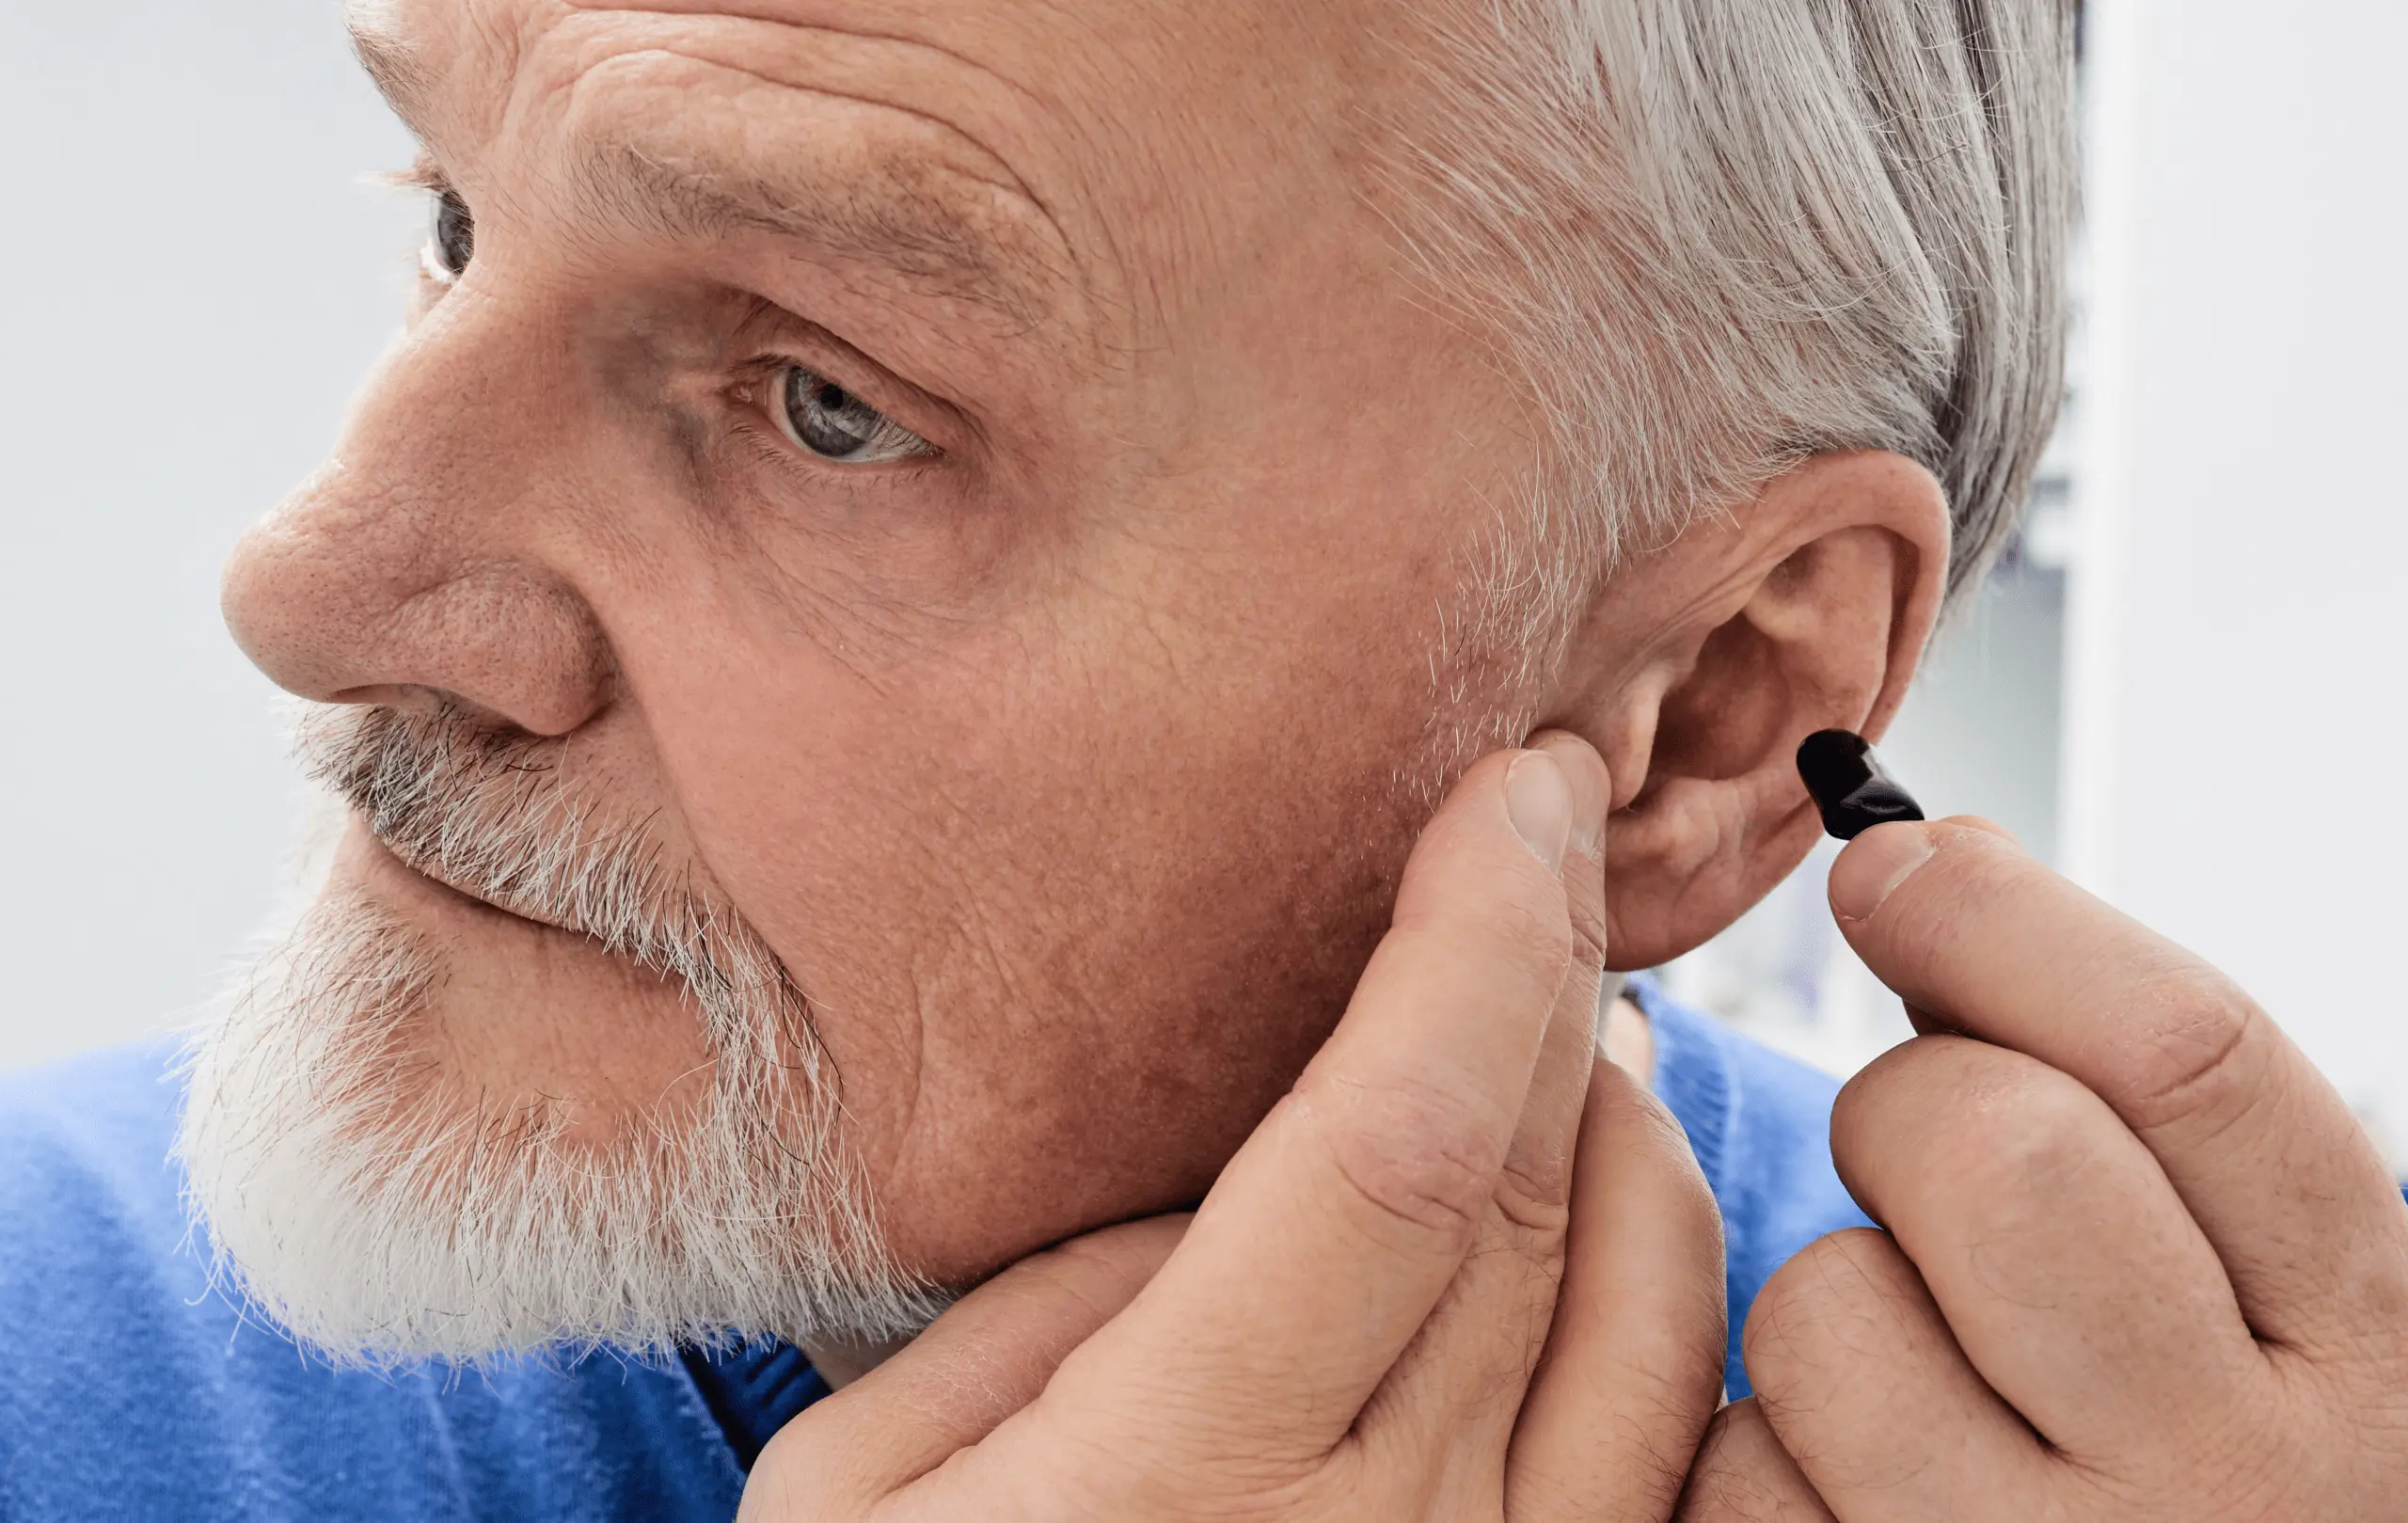 Marmed - Aparaty Słuchowe - Badanie Słuchu - Mity o aparatach słuchowych